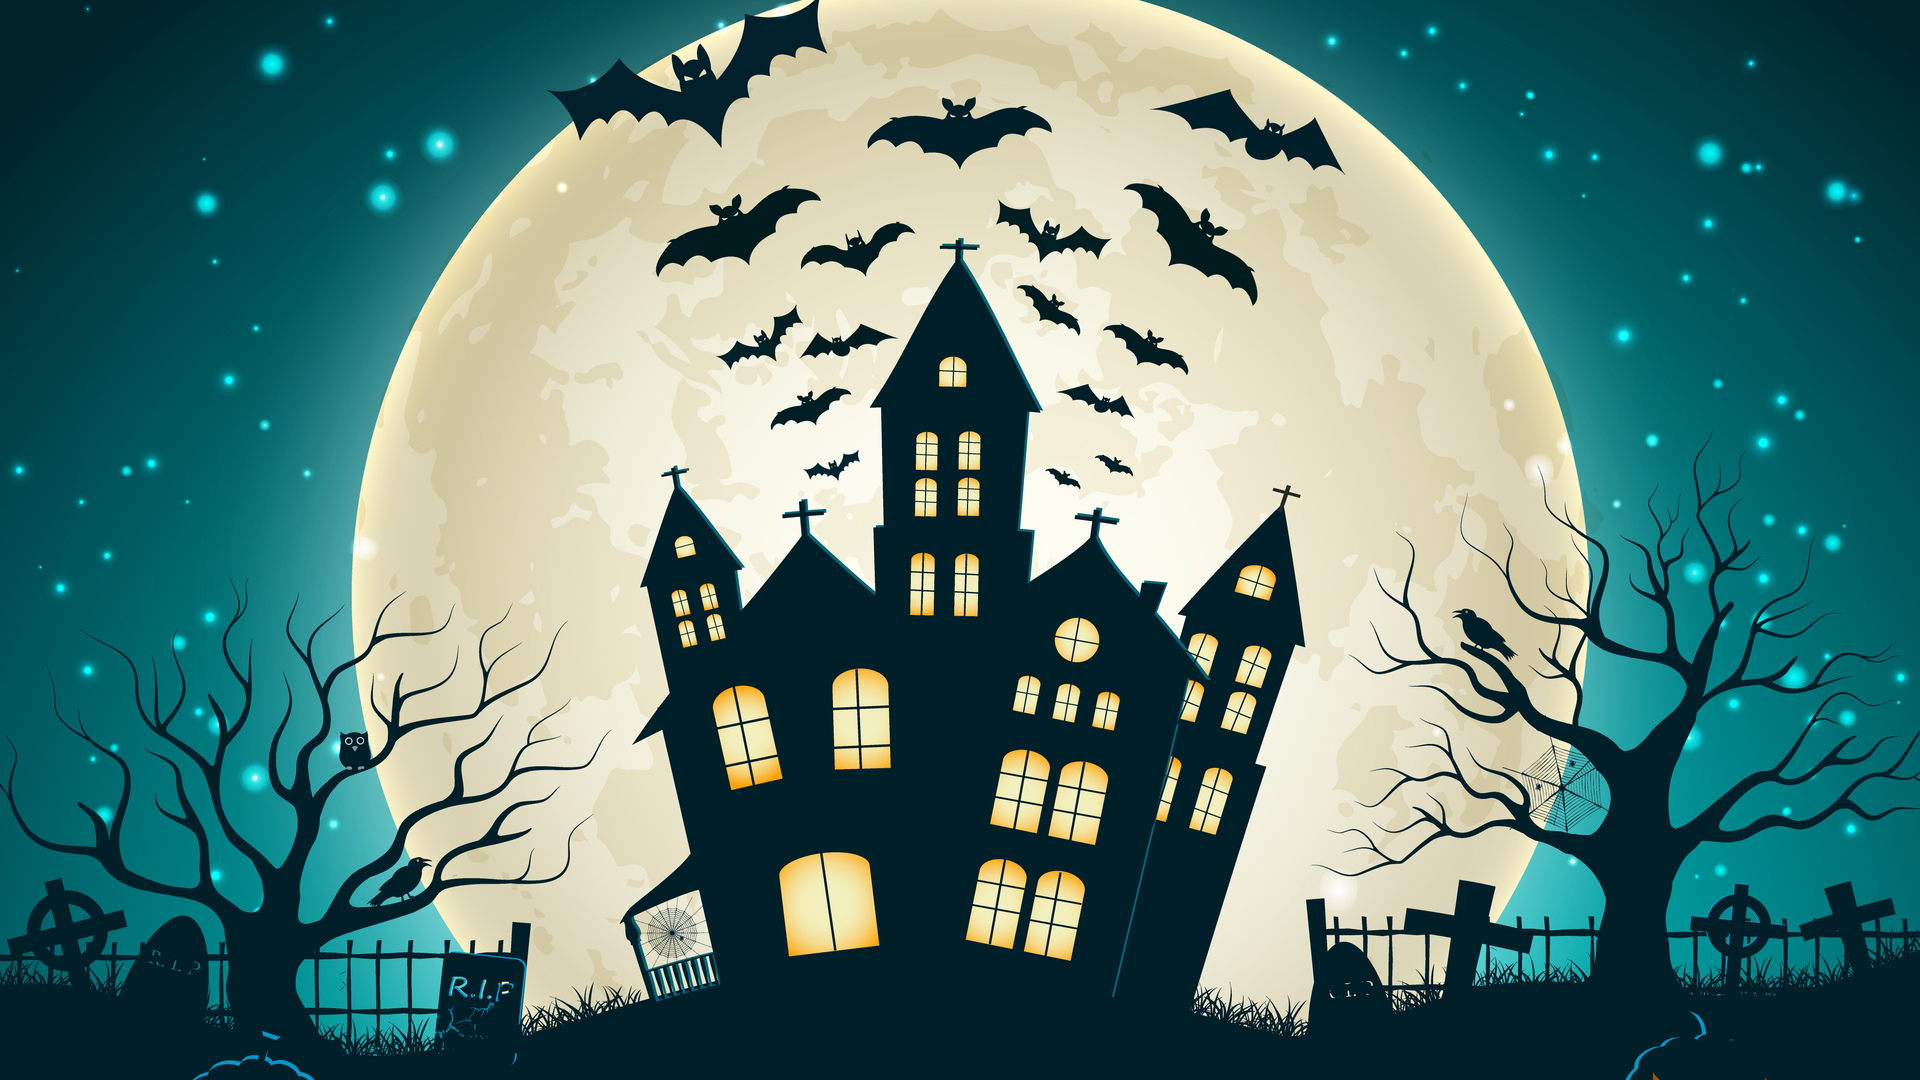 Halloween Bats desktop wallpaper free download